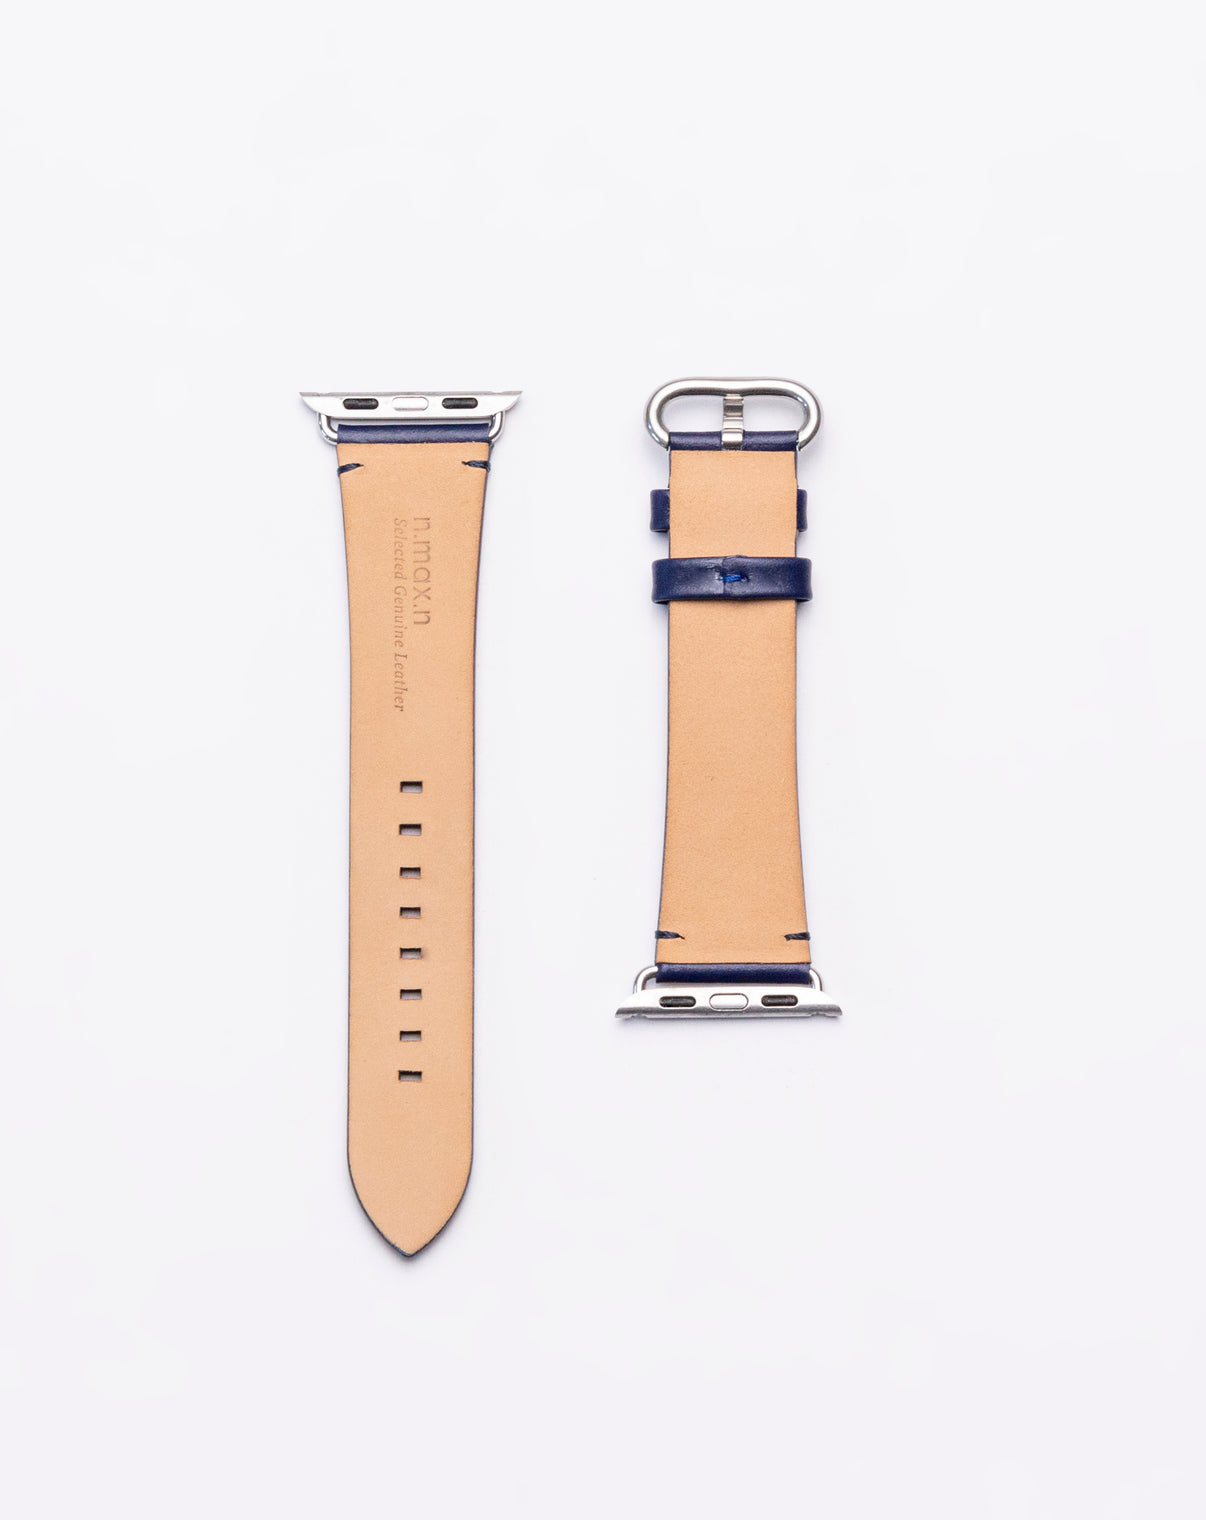 台湾発のn max n、ノンステッチの本革製「Apple Watch」用バンド『Geniuine Leather Watch band』を販売開始